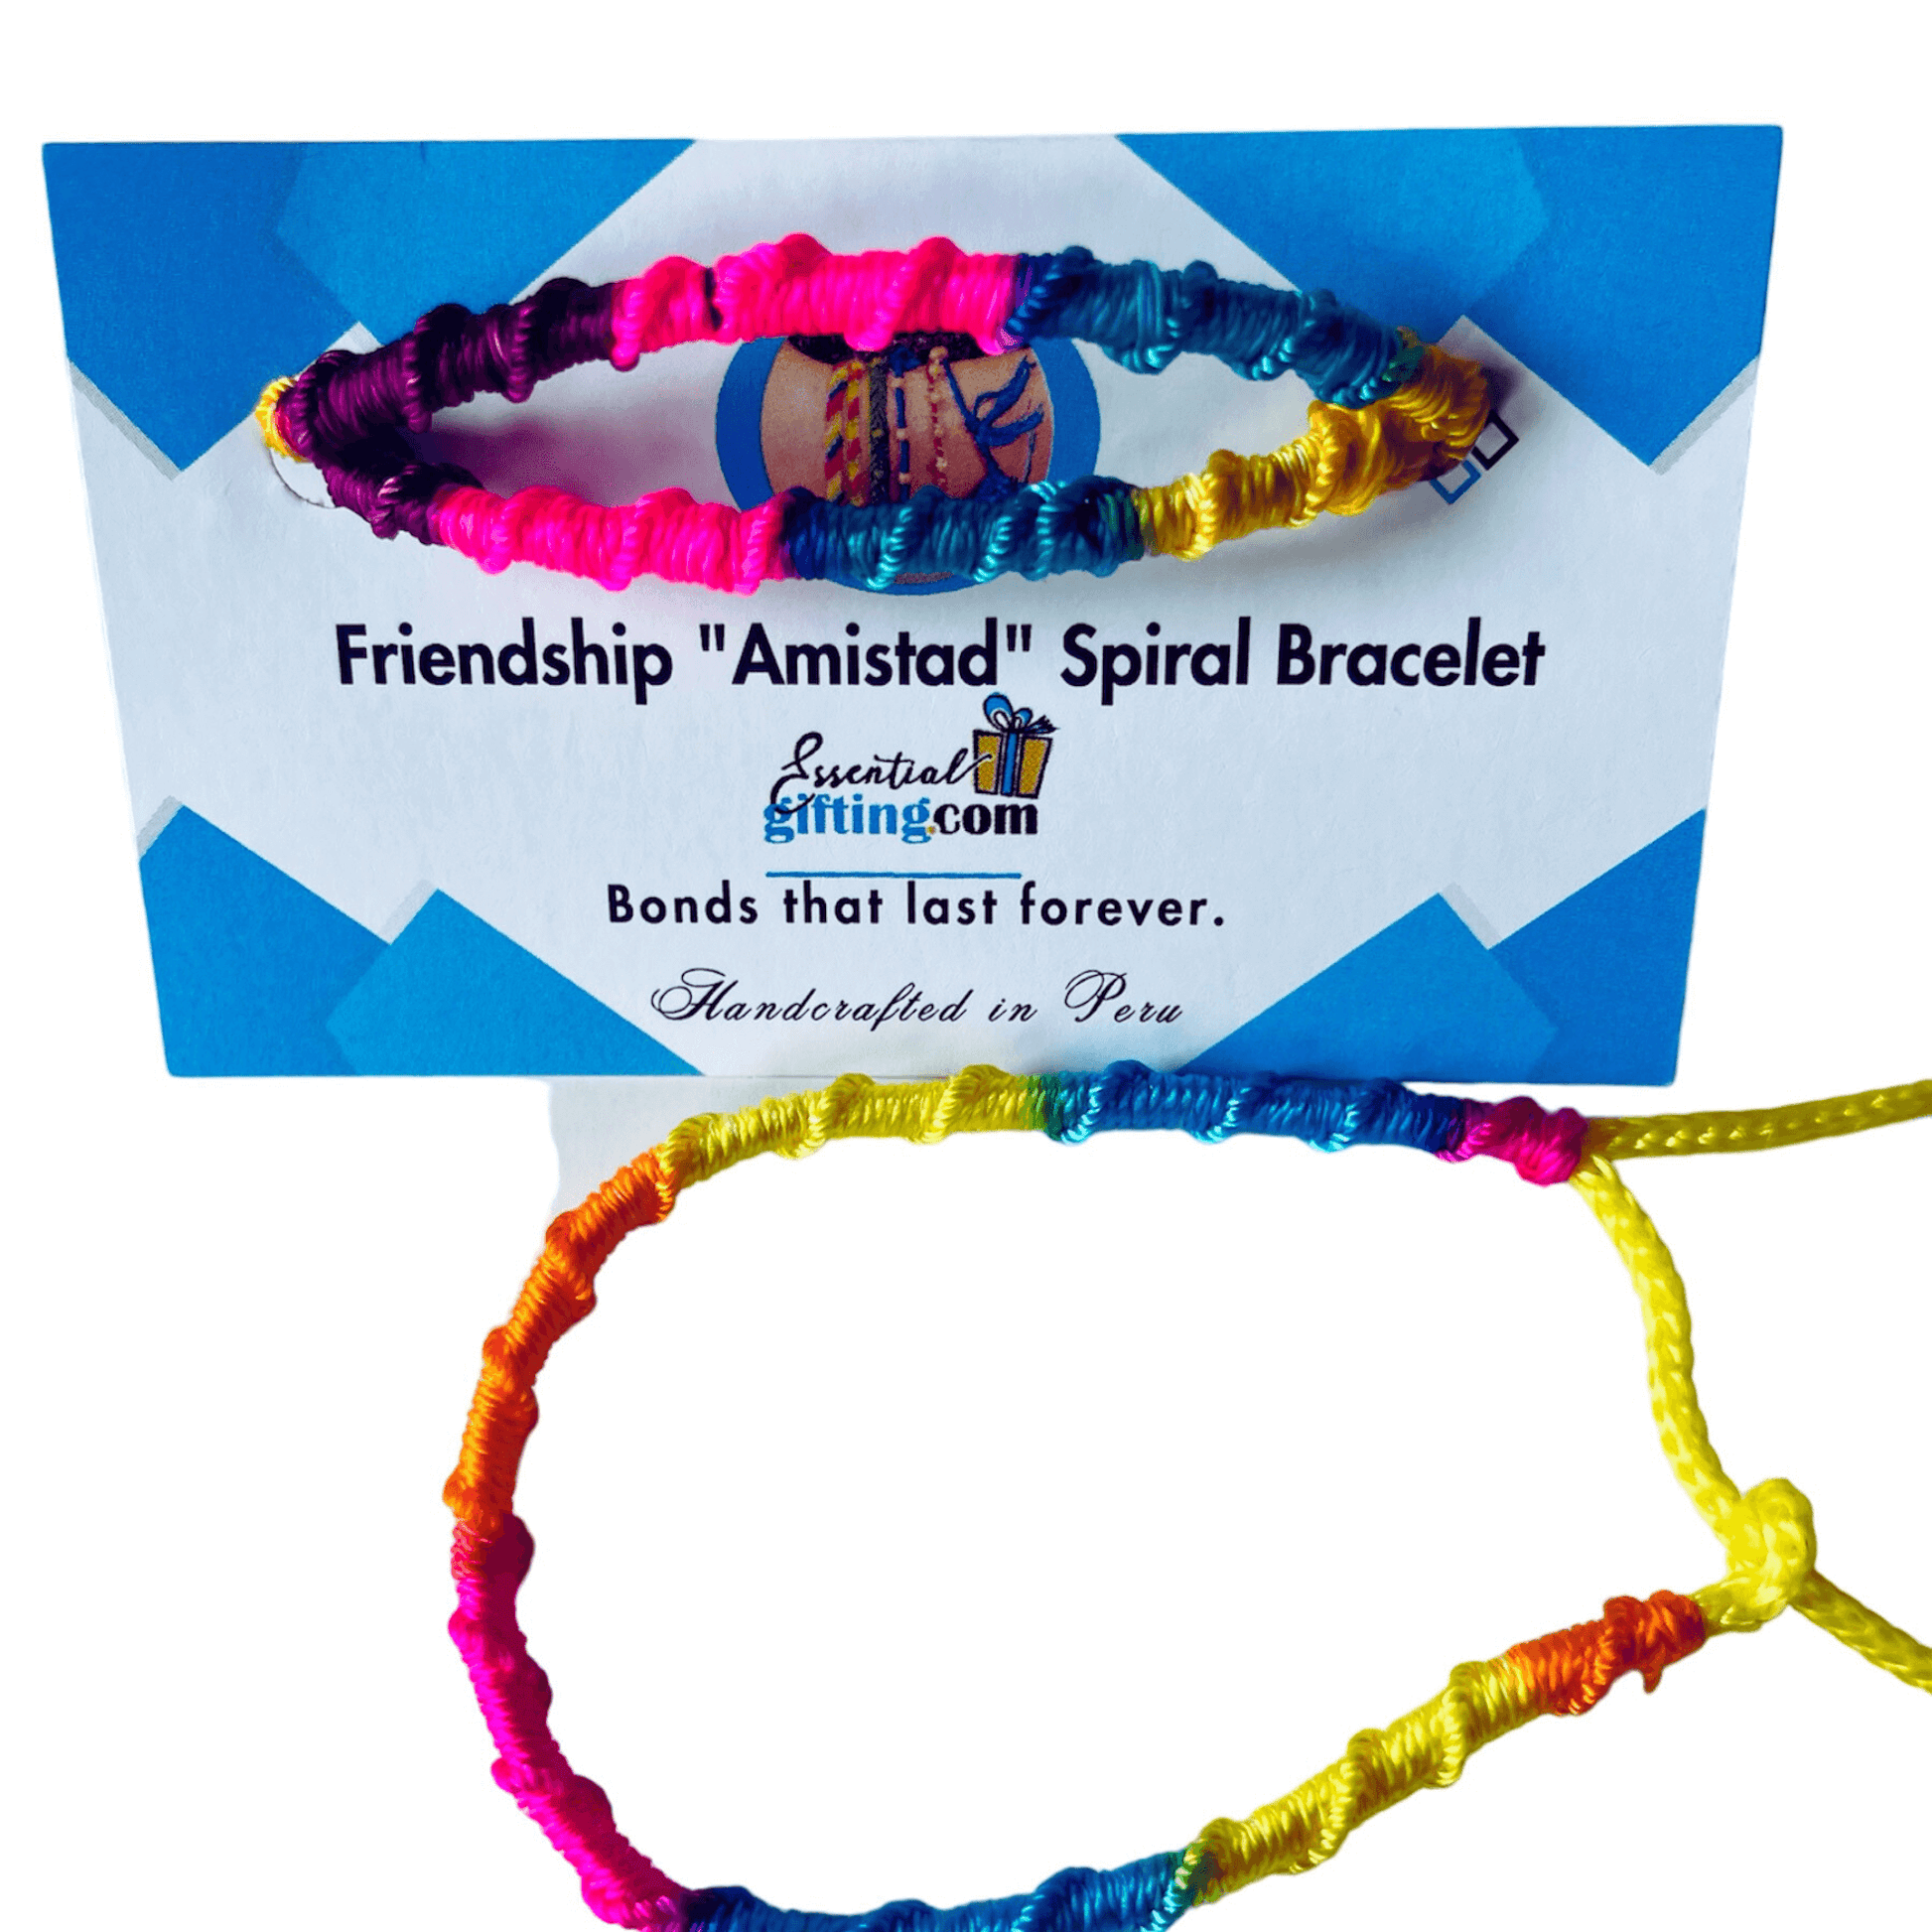 Friendship Bracelets